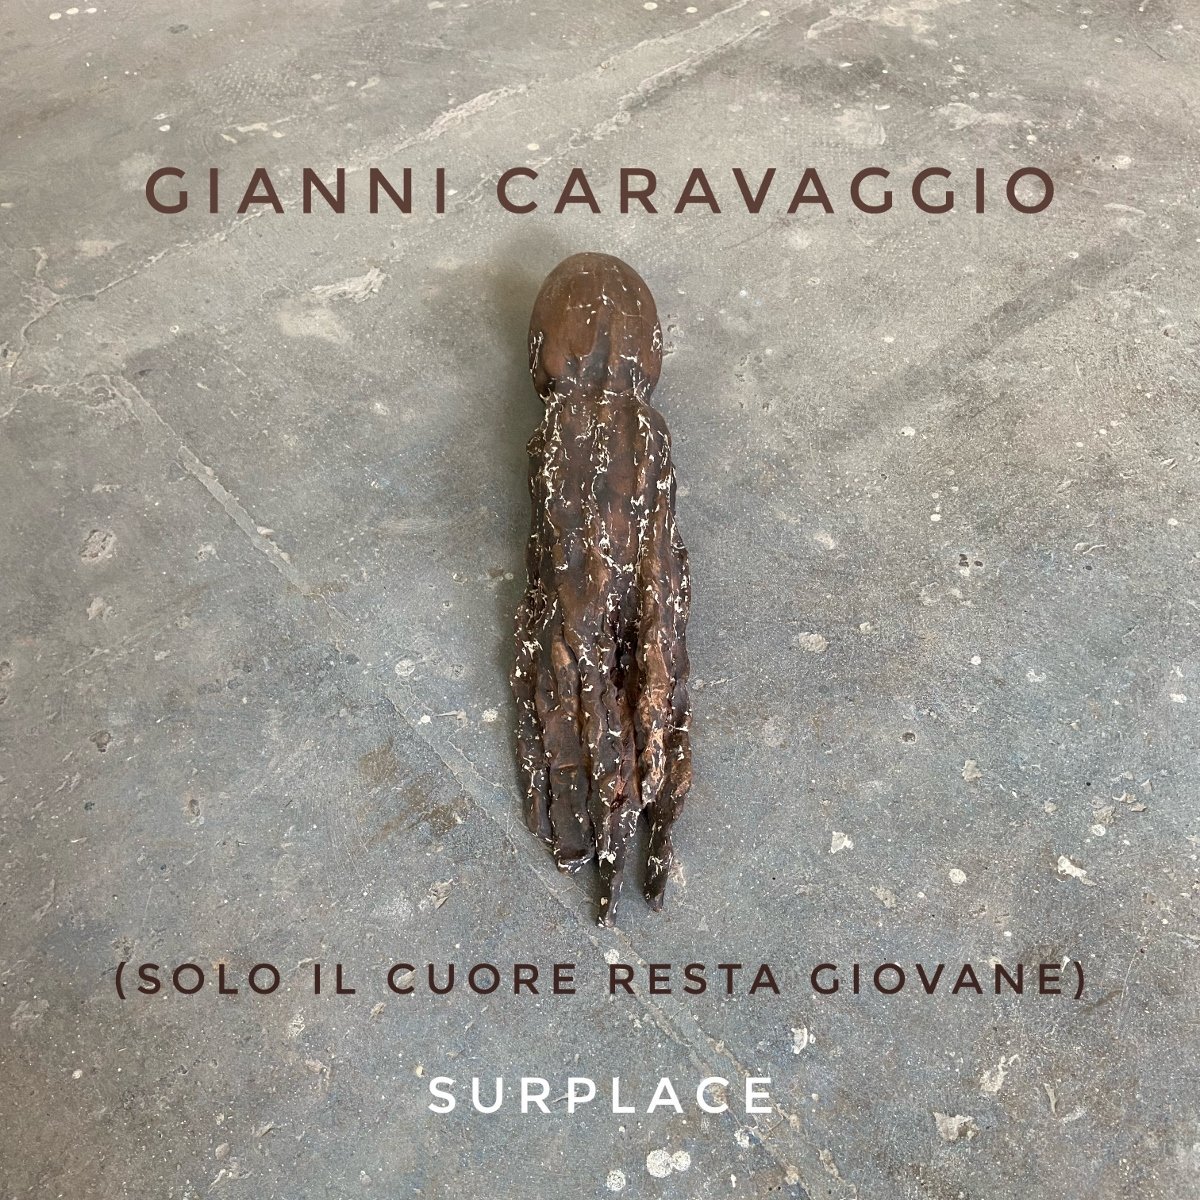 Gianni Caravaggio – (Solo il cuore resta giovane)